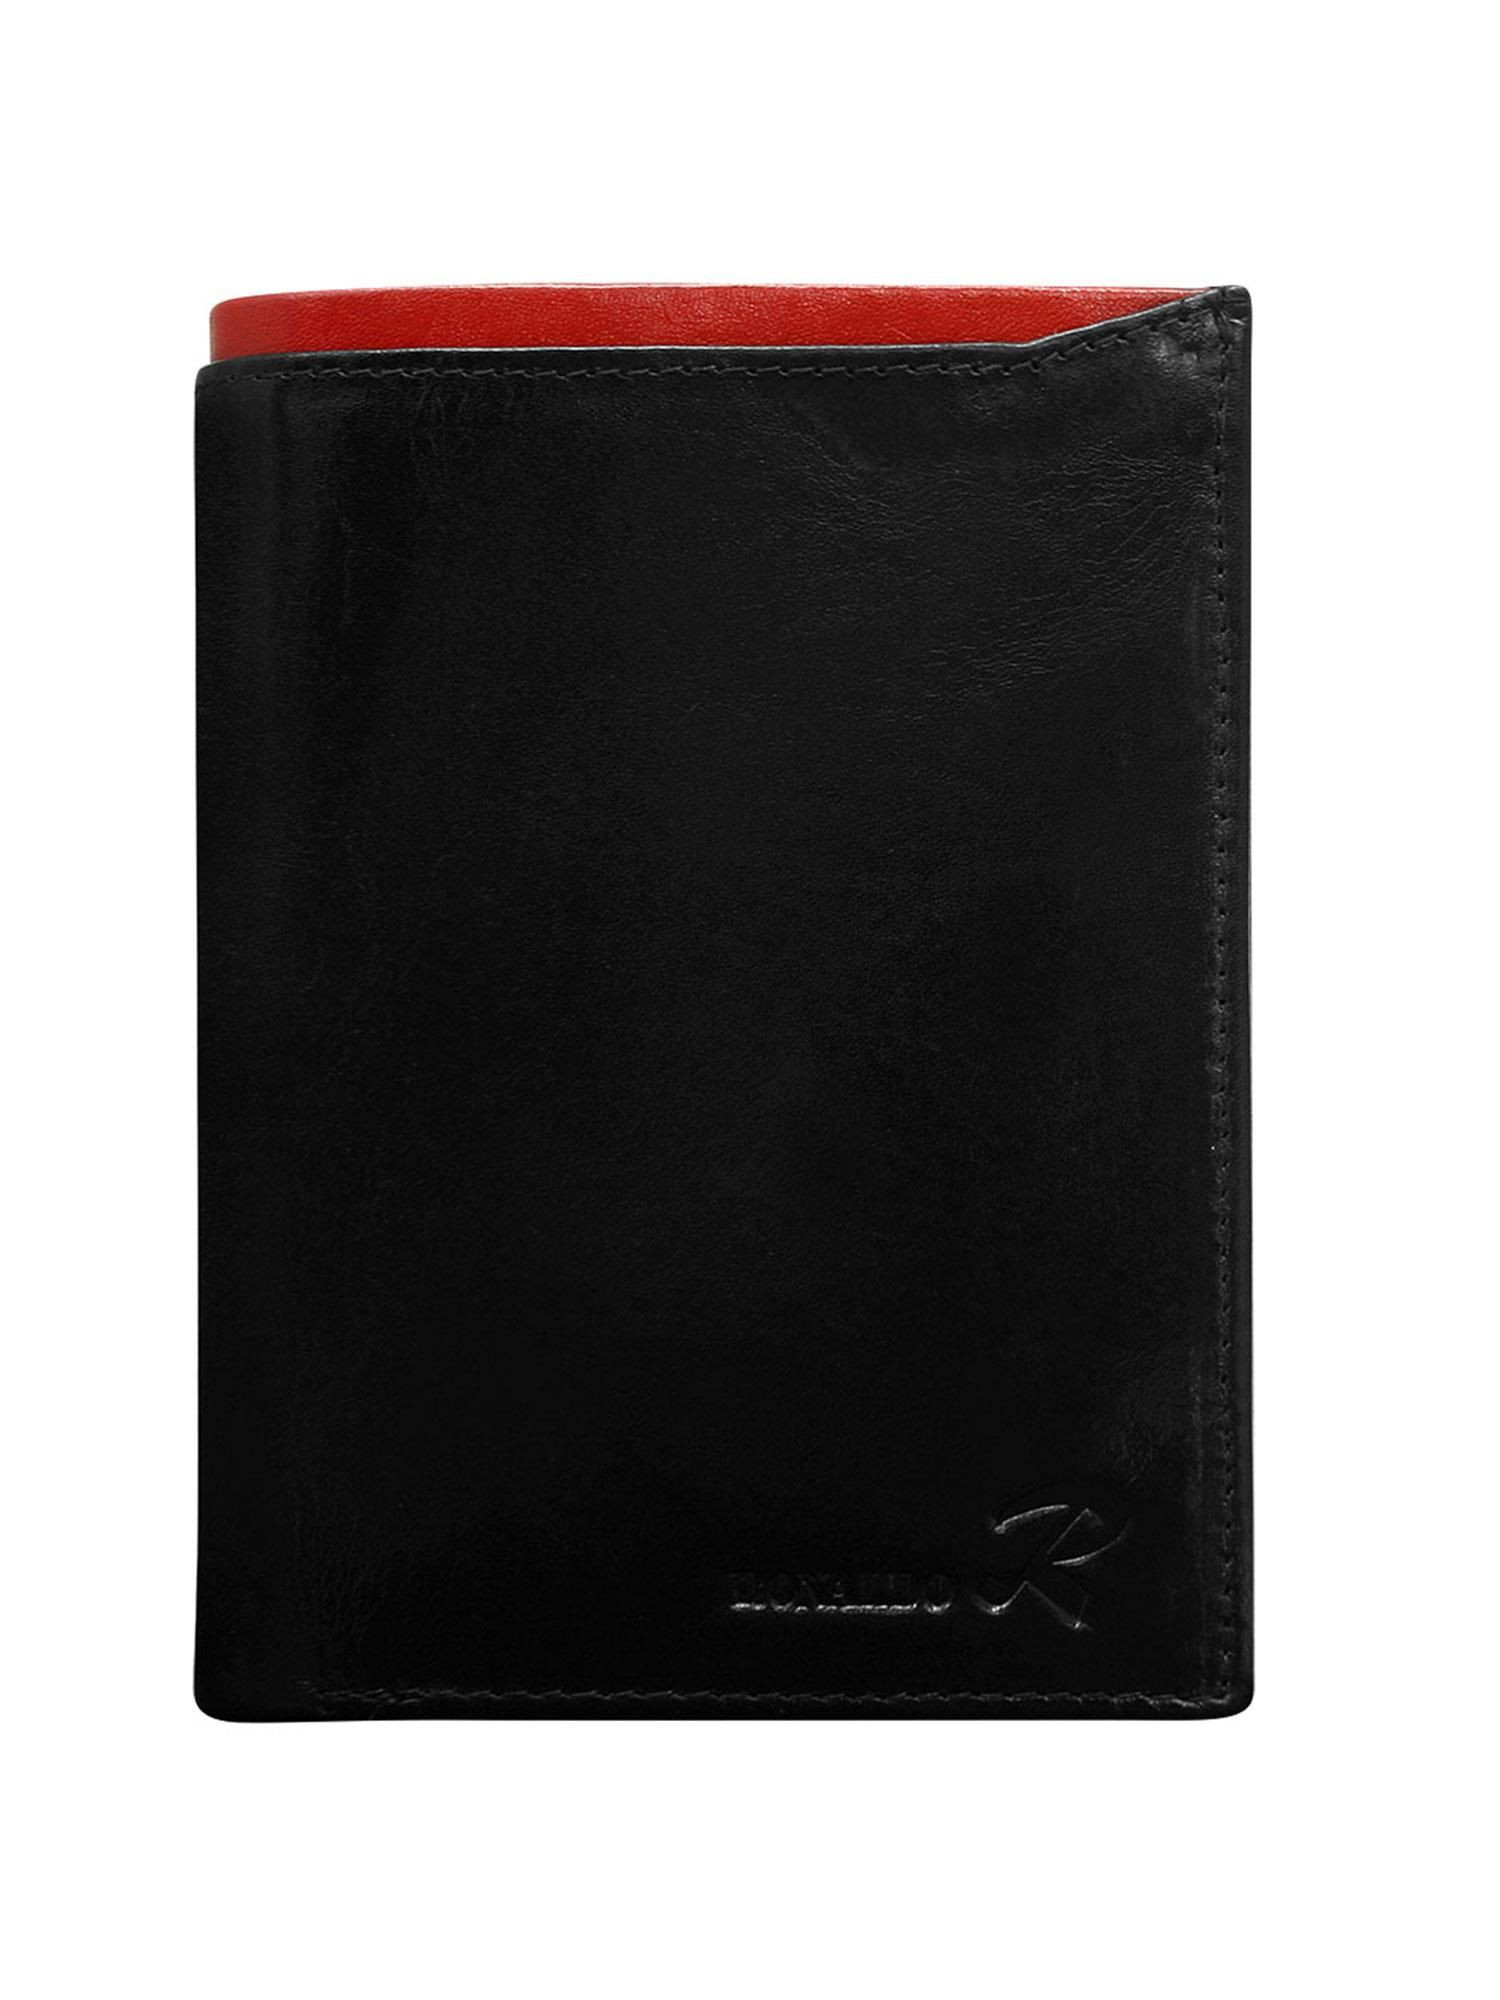 Peněženka CE PR N104 VT.87 černá a červená jedna velikost